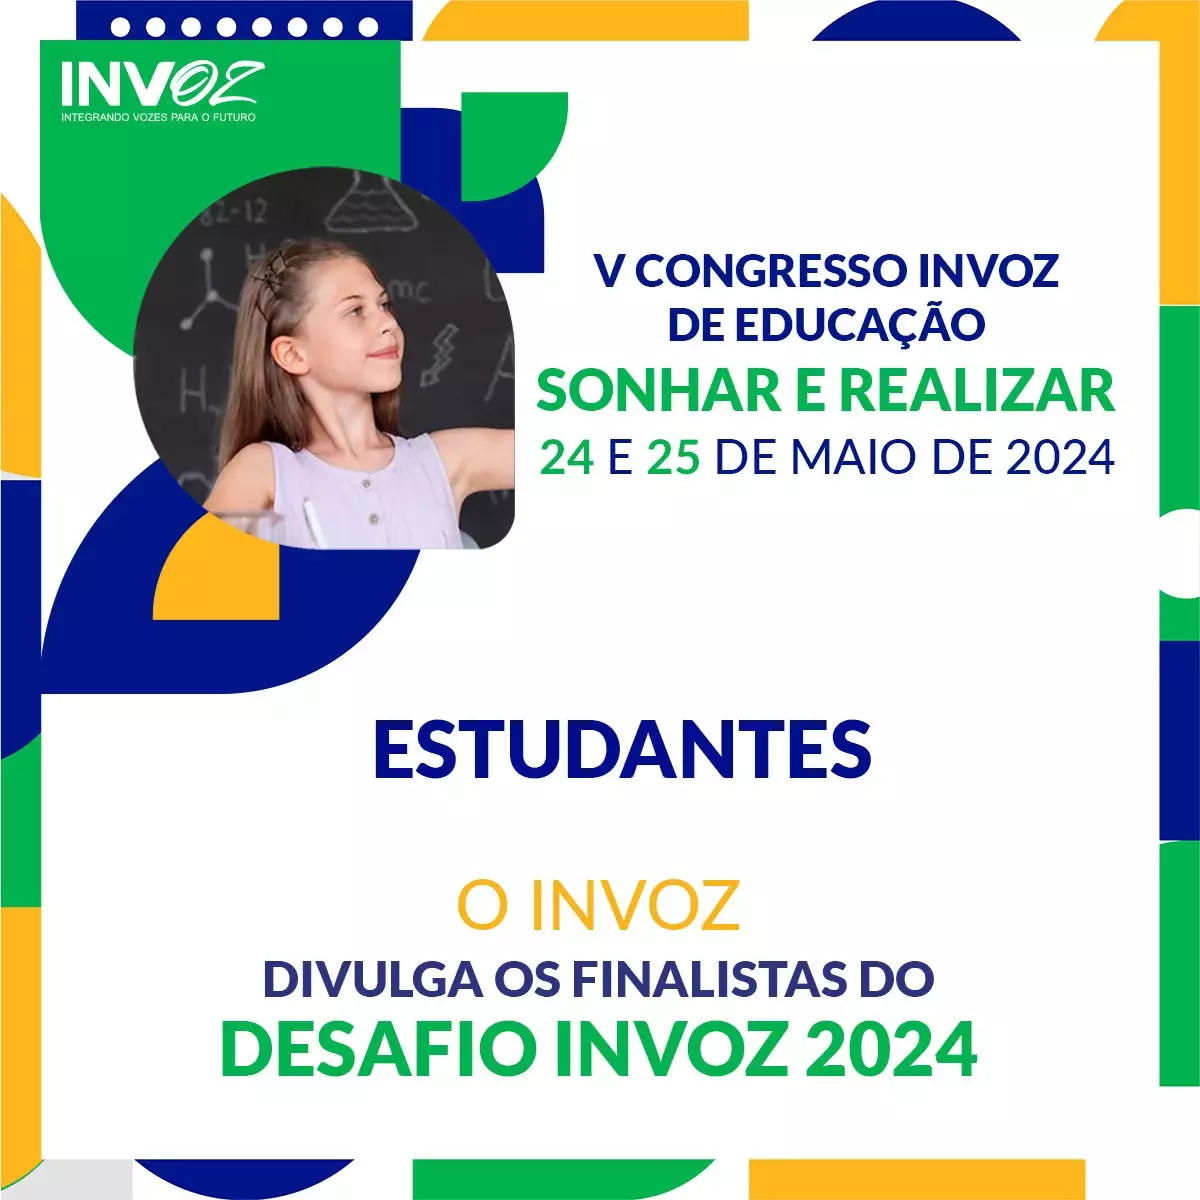 O Invoz divulga os finalistas do DESAFIO INVOZ 2024